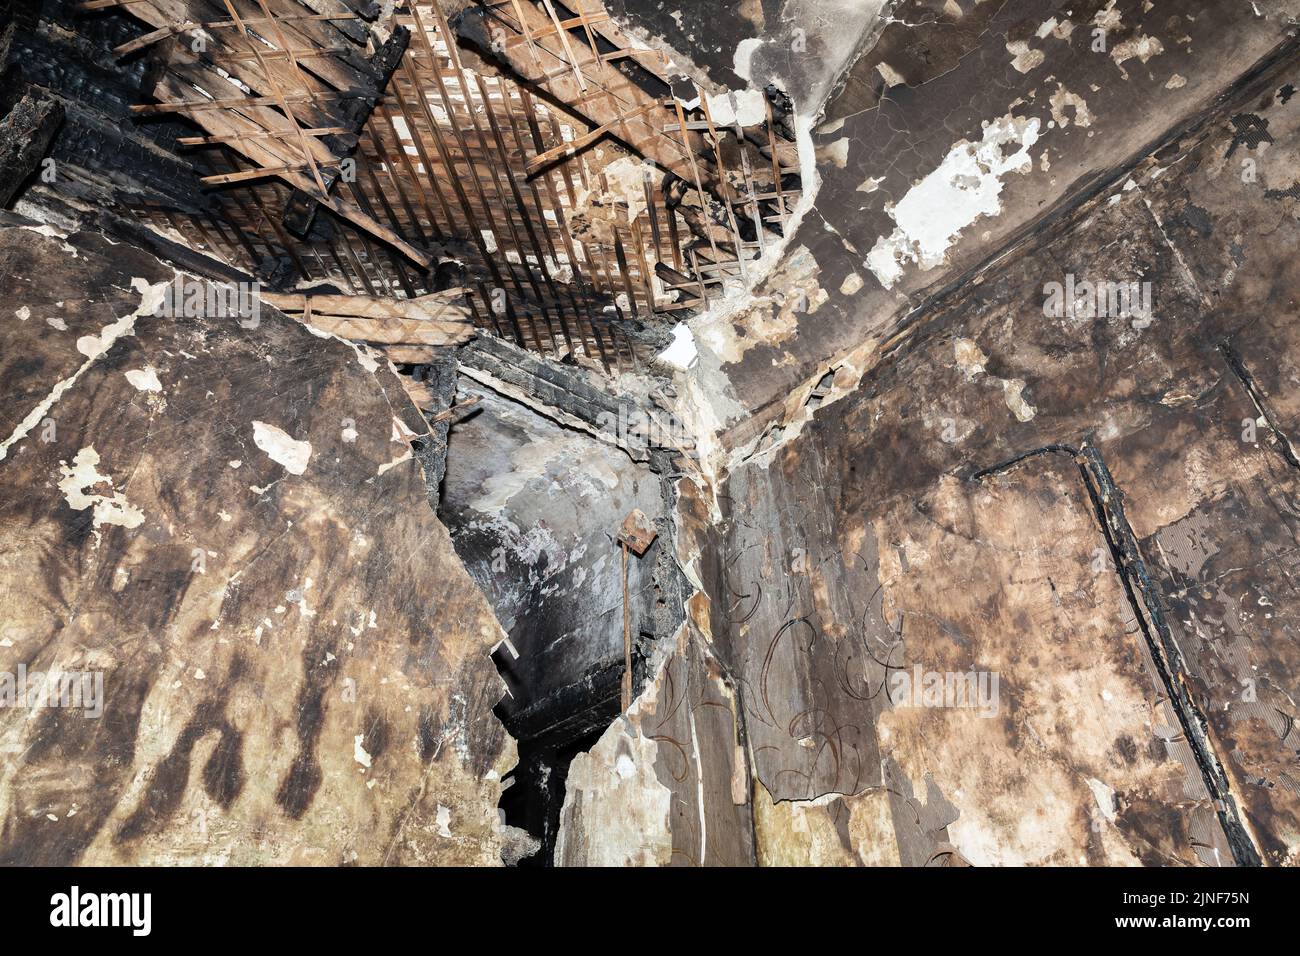 Die verbrannten und beschädigten Wände des städtischen Krankenhauses als Folge des russischen Beschusses in Charkiw. Nach Angaben der Vereinten Nationen sind seit dem russischen Einmarsch in die Ukraine mindestens 12 Millionen Menschen aus ihrer Heimat geflohen, während sieben Millionen Menschen innerhalb des Landes vertrieben werden. Stockfoto